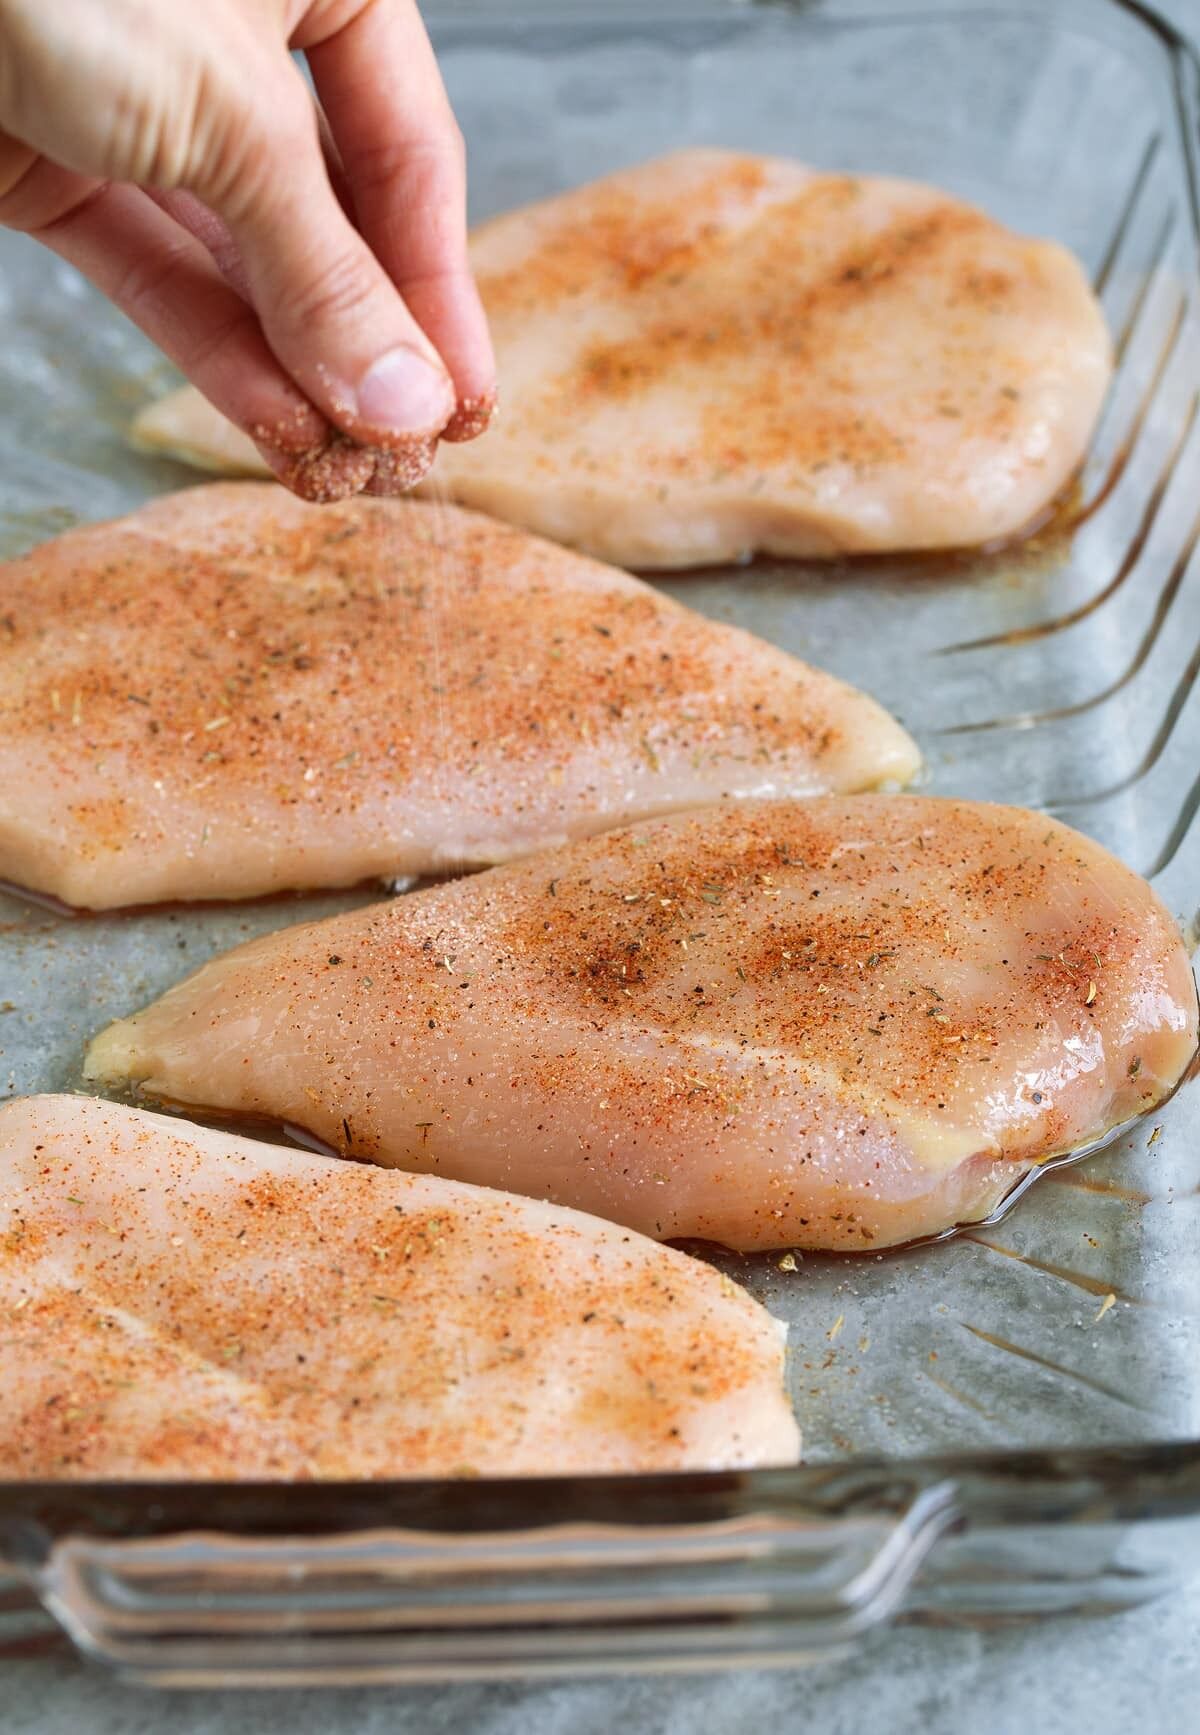 Dlaczego smażony kurczak okazuje się suchy: nigdy nie gotuj mięsa w ten sposób